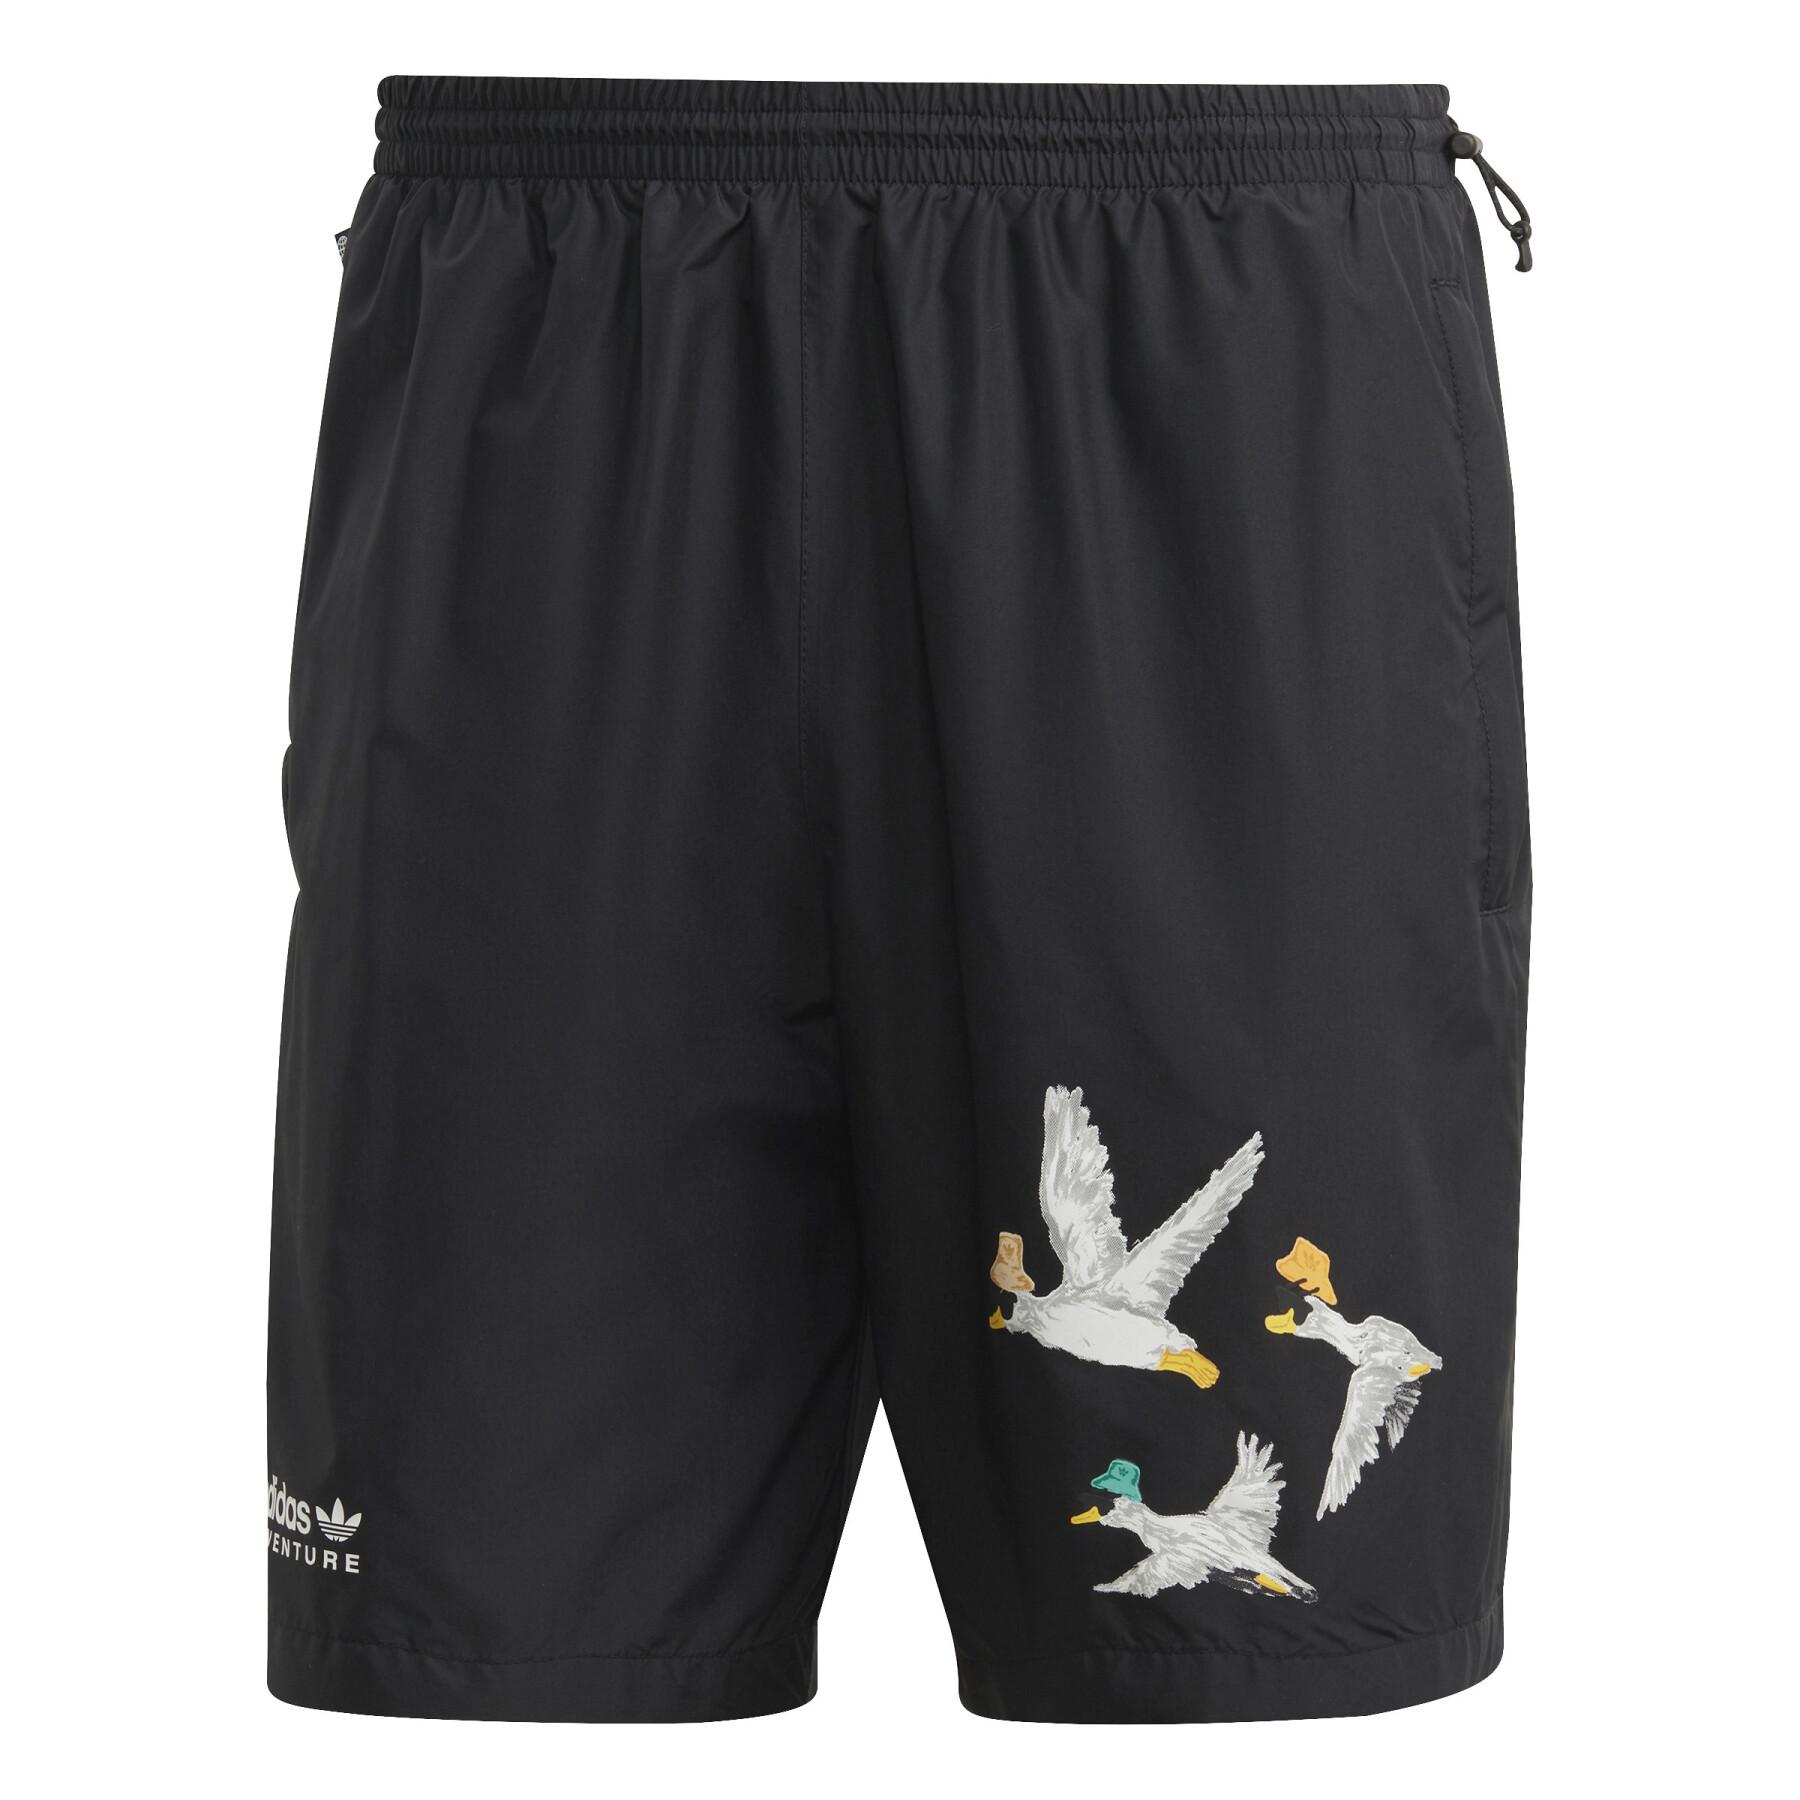 Swim shorts adidas Originals Adventure Duck